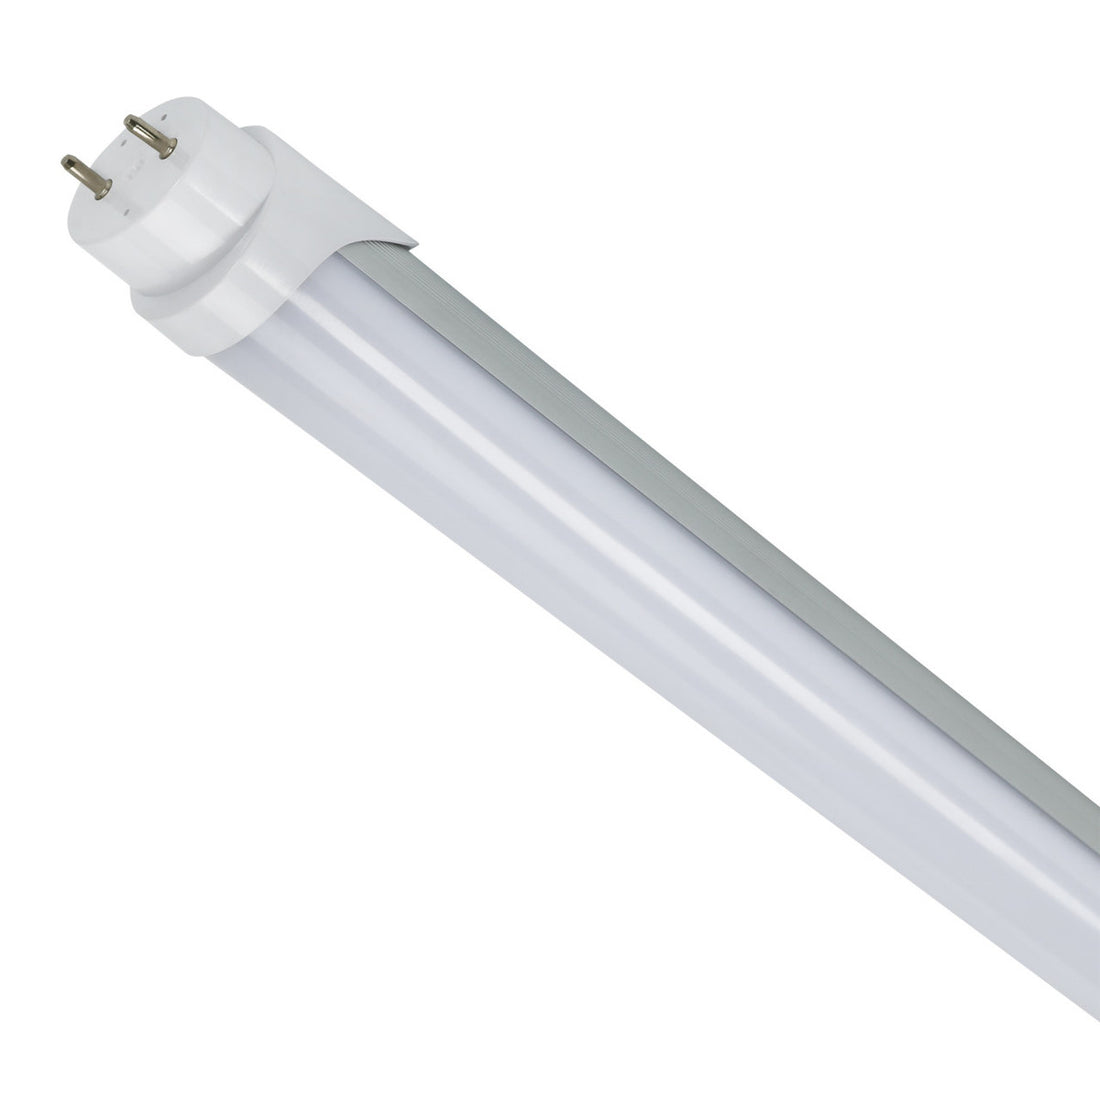 4ft LED Tube Light - 12W, 5000K, 100-277VAC, 1656 Lumens, Aluminum Housing, External Driver, Frosted Lens - 30 Pack